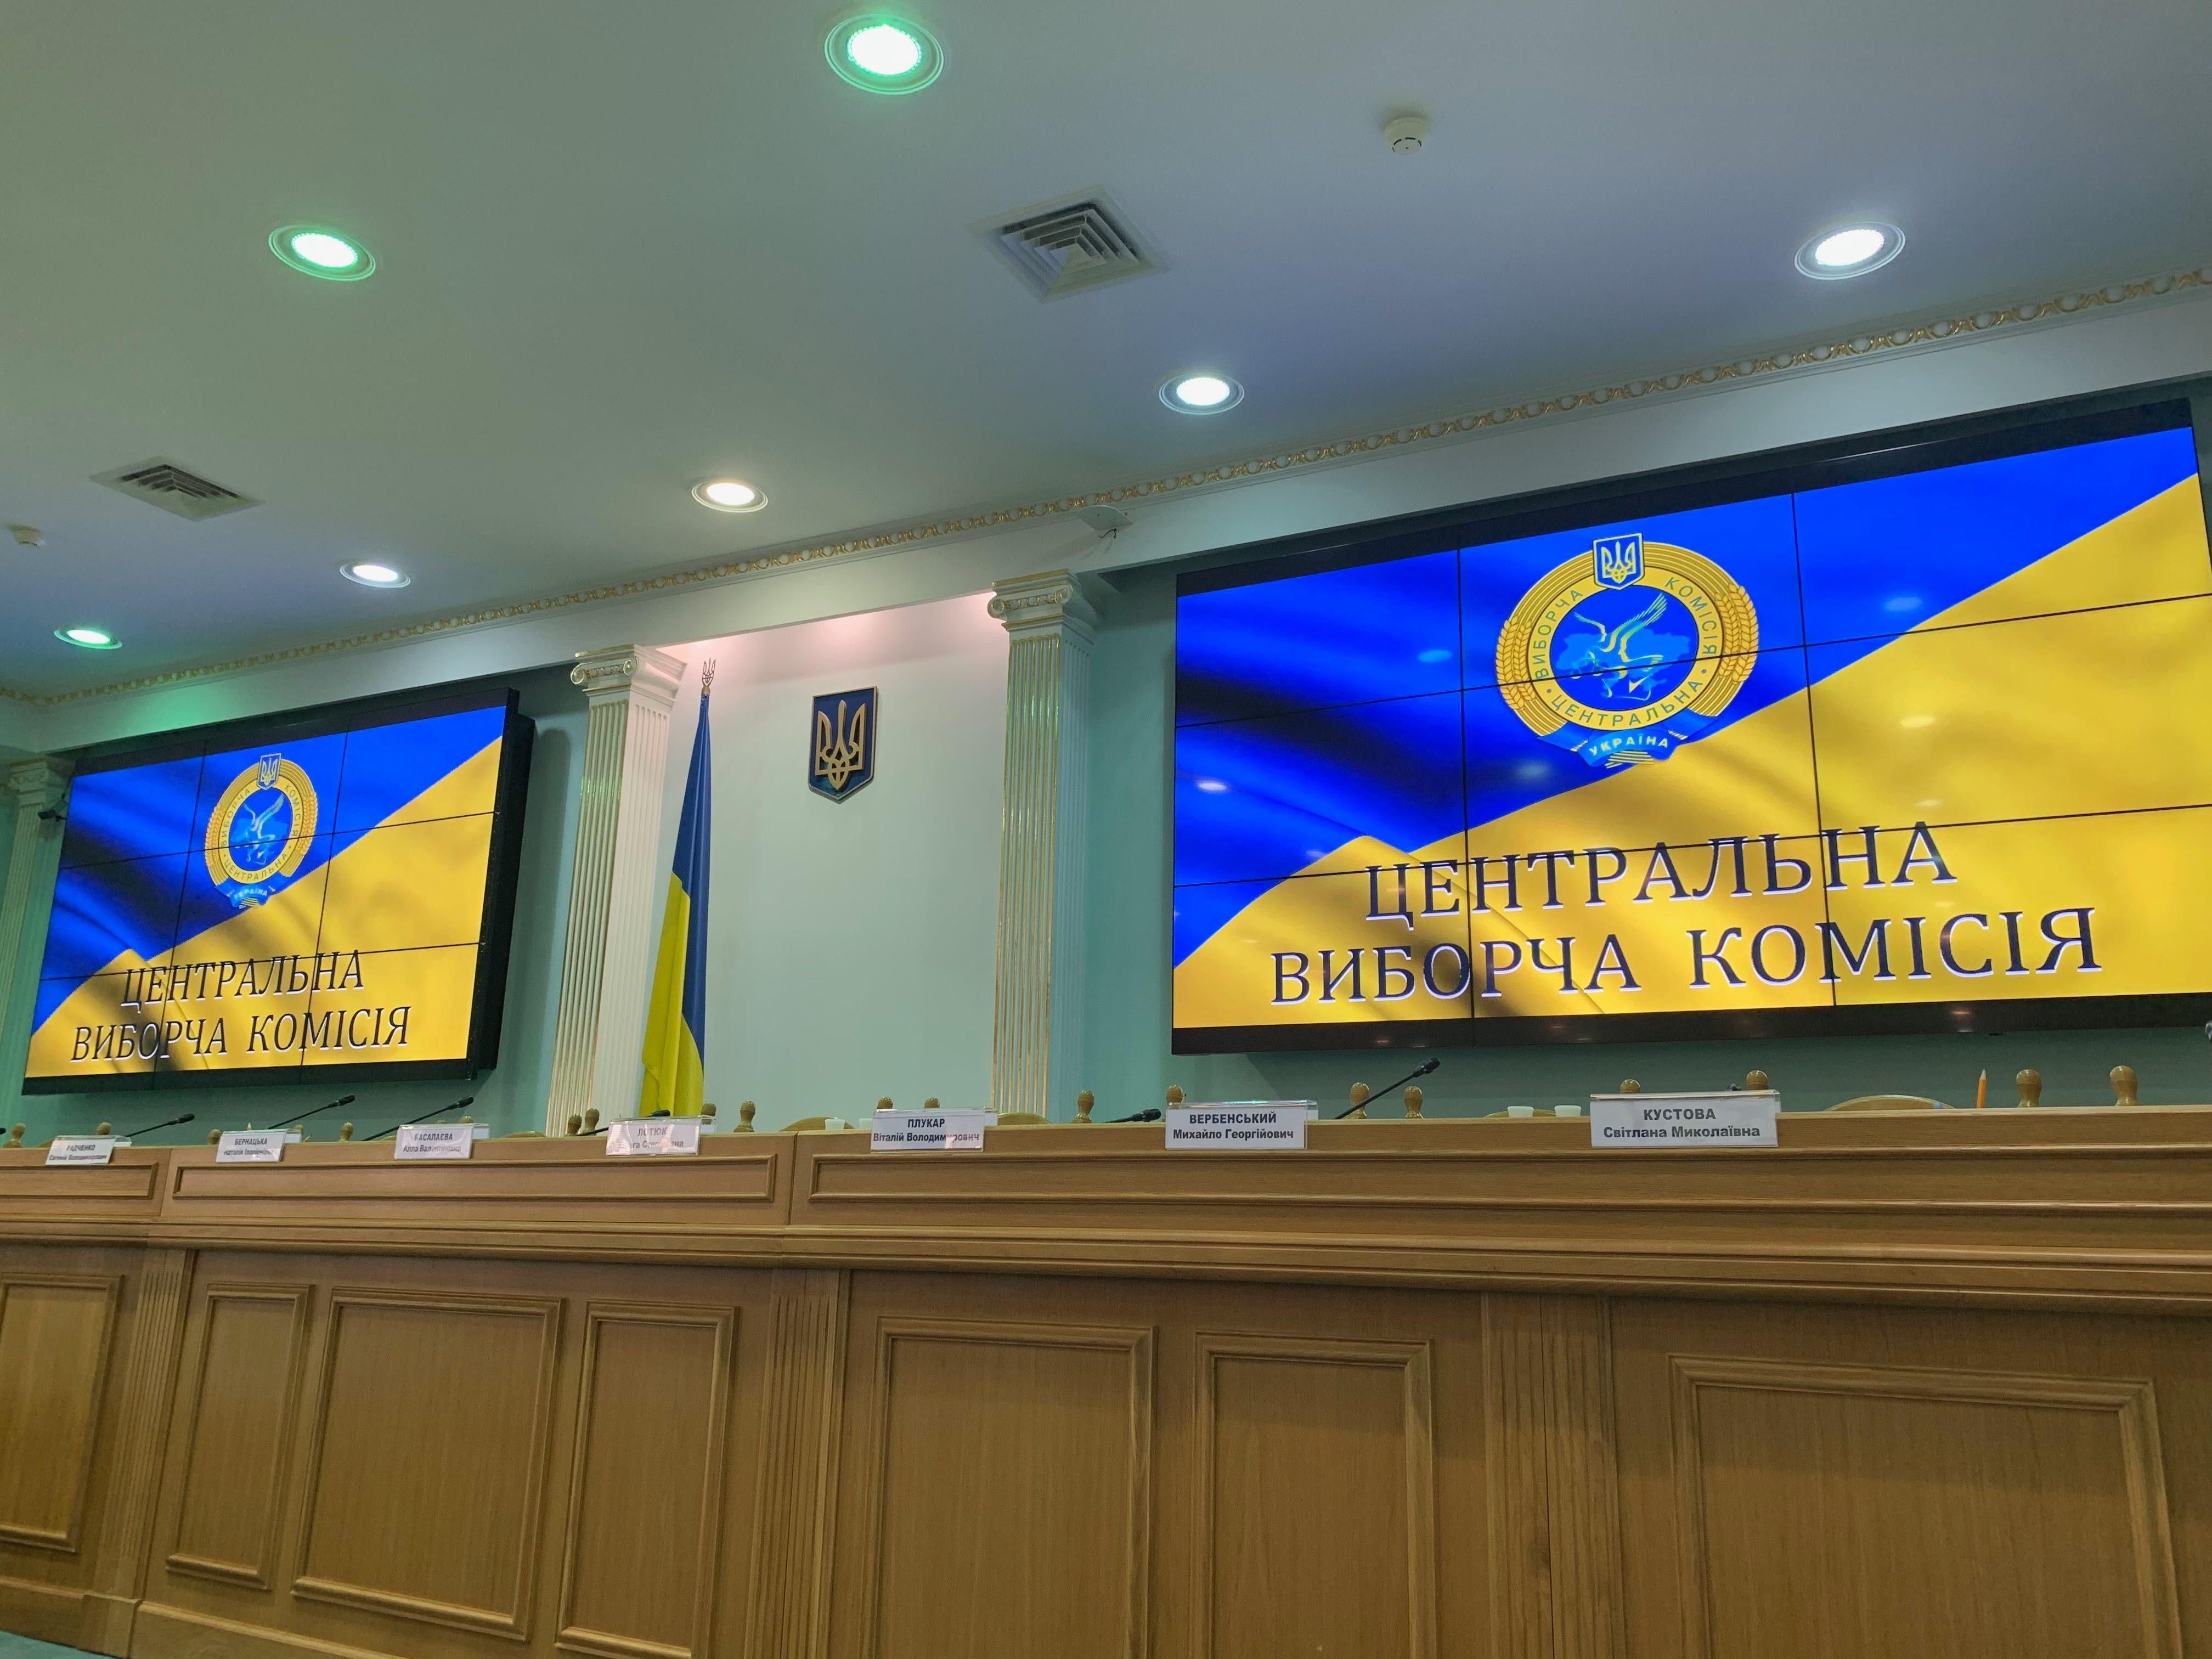 Коли будуть результати виборів президента в Україні 2019 Україна - дата